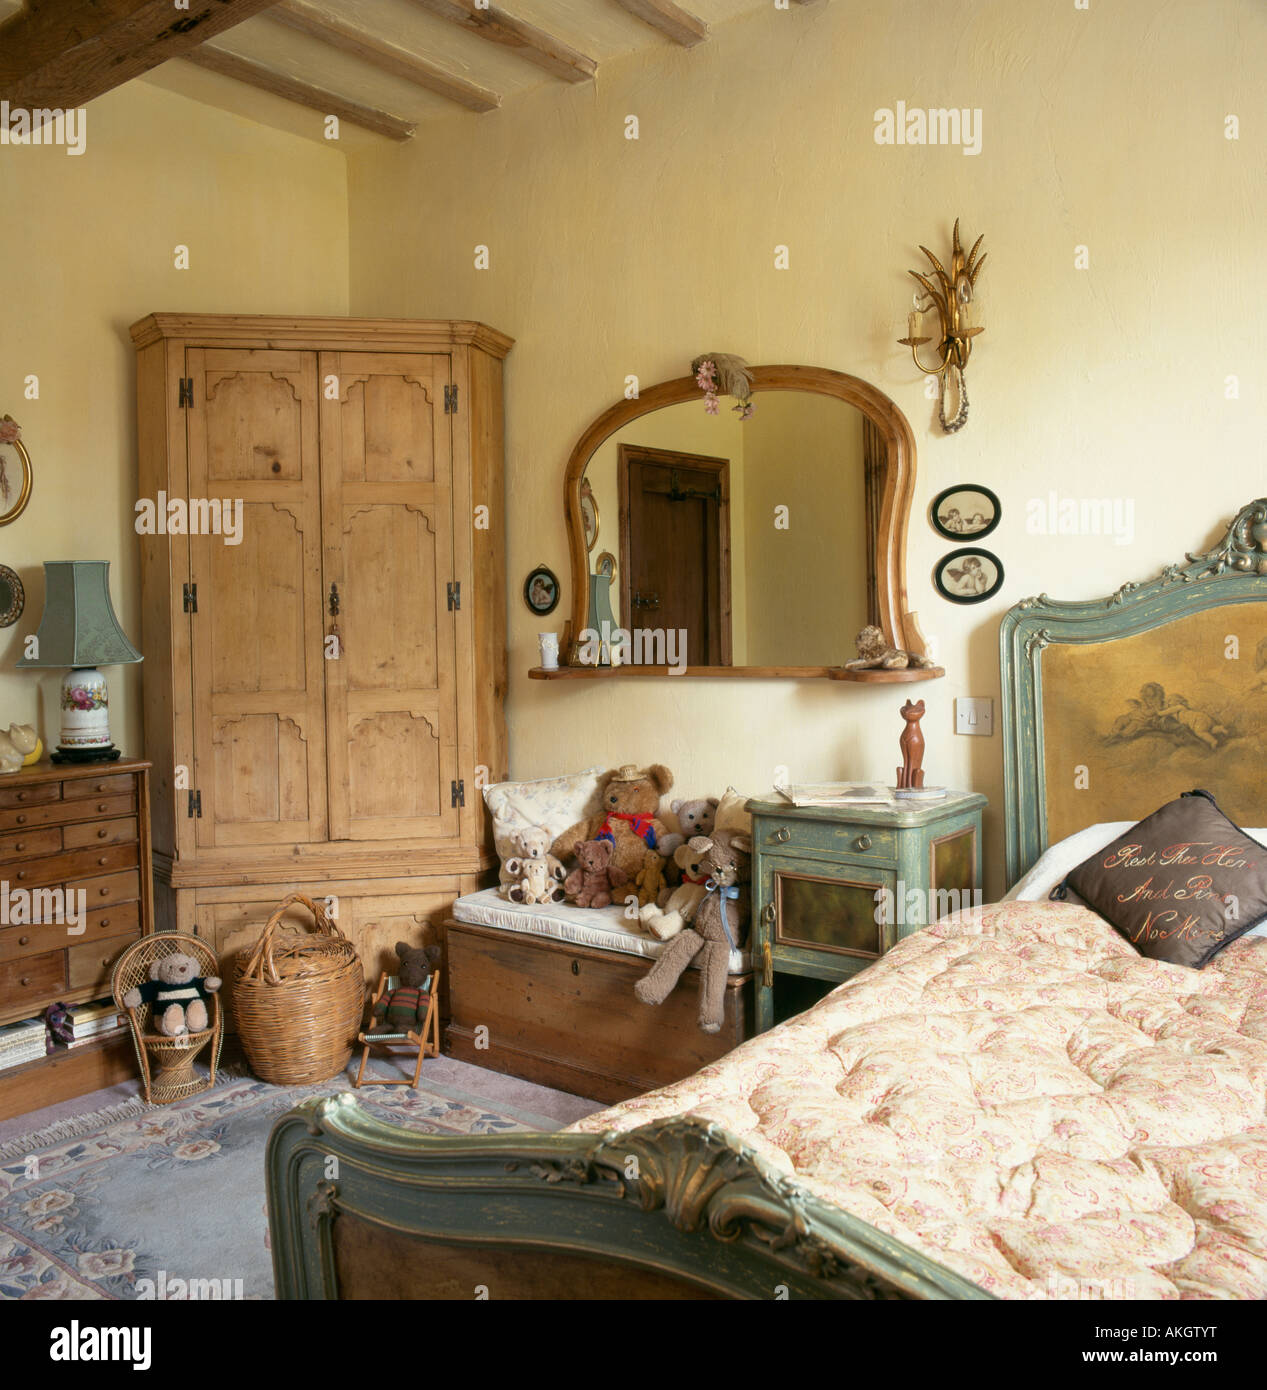 Antik Kiefer Eckschrank Schlafzimmer mit Holz Spiegel über Kiefer Brust und  lackierte Bett Stockfotografie - Alamy